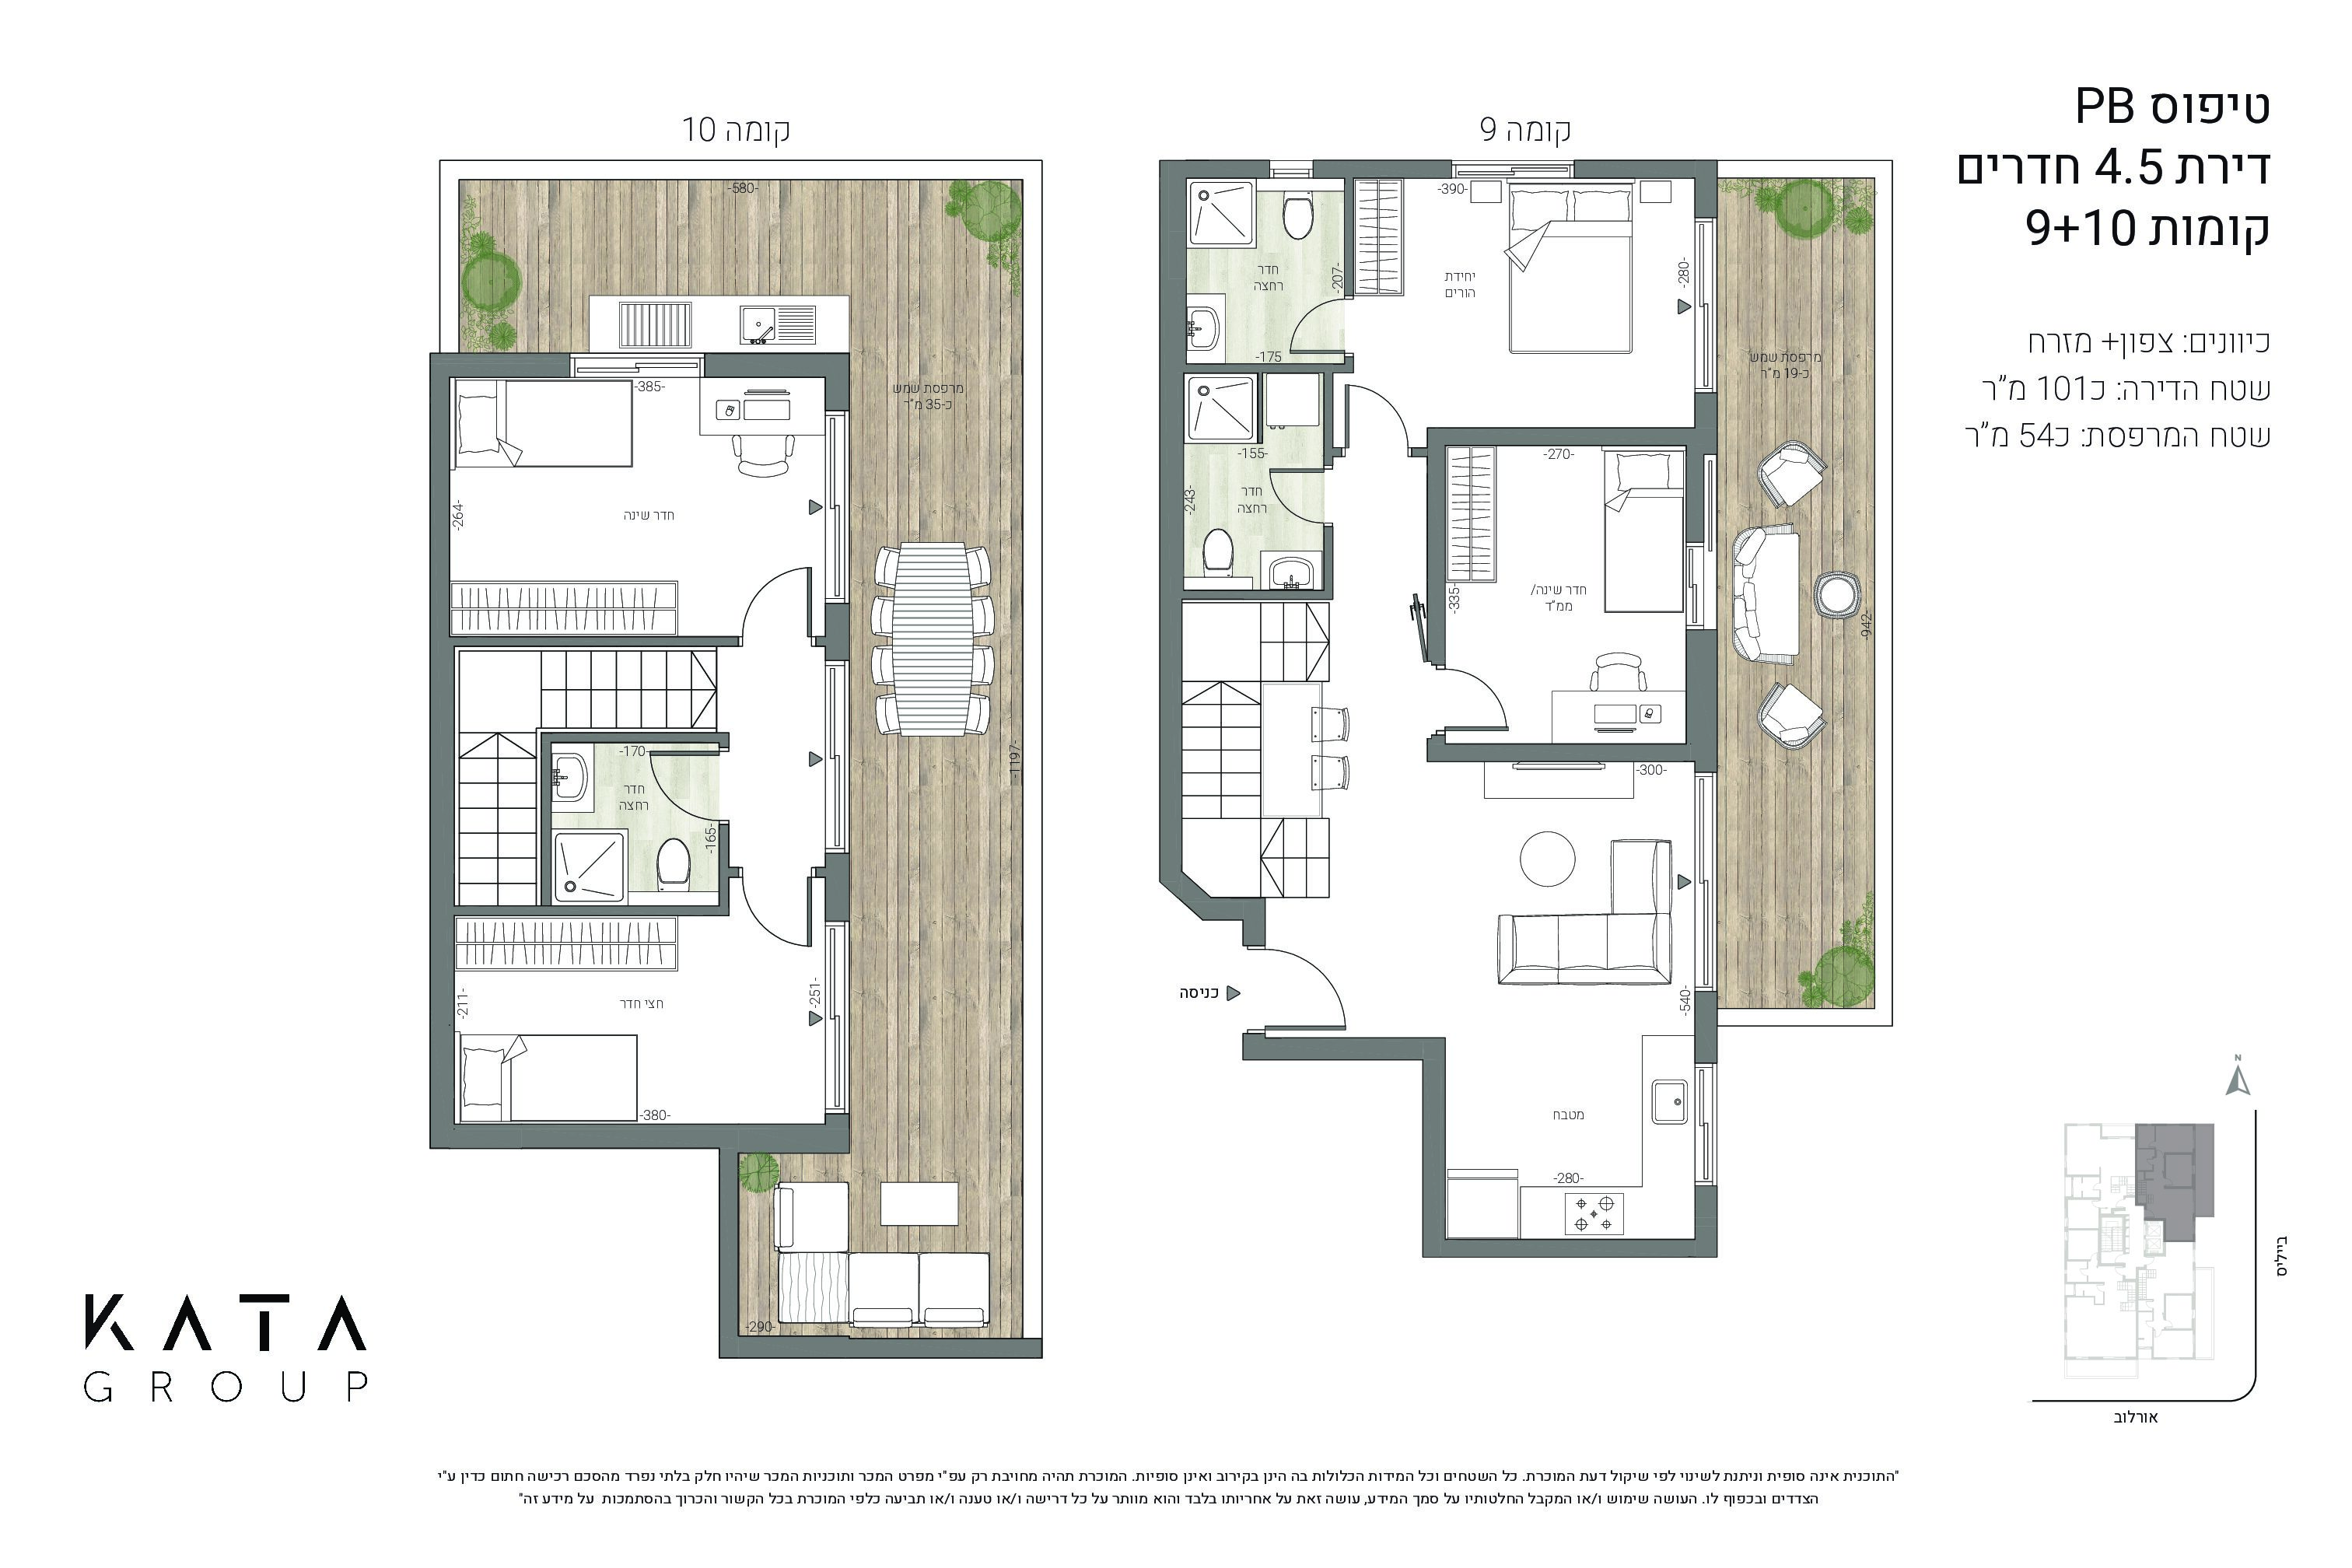 אורלוב 31, פ"ת טיפוס PB דירת 4.5 חדרים קומות 9+10, כיוונים - צפון+מזרח, שטח דירה - כ101 מ"ר, שטח מרפסת - כ54 מ"ר